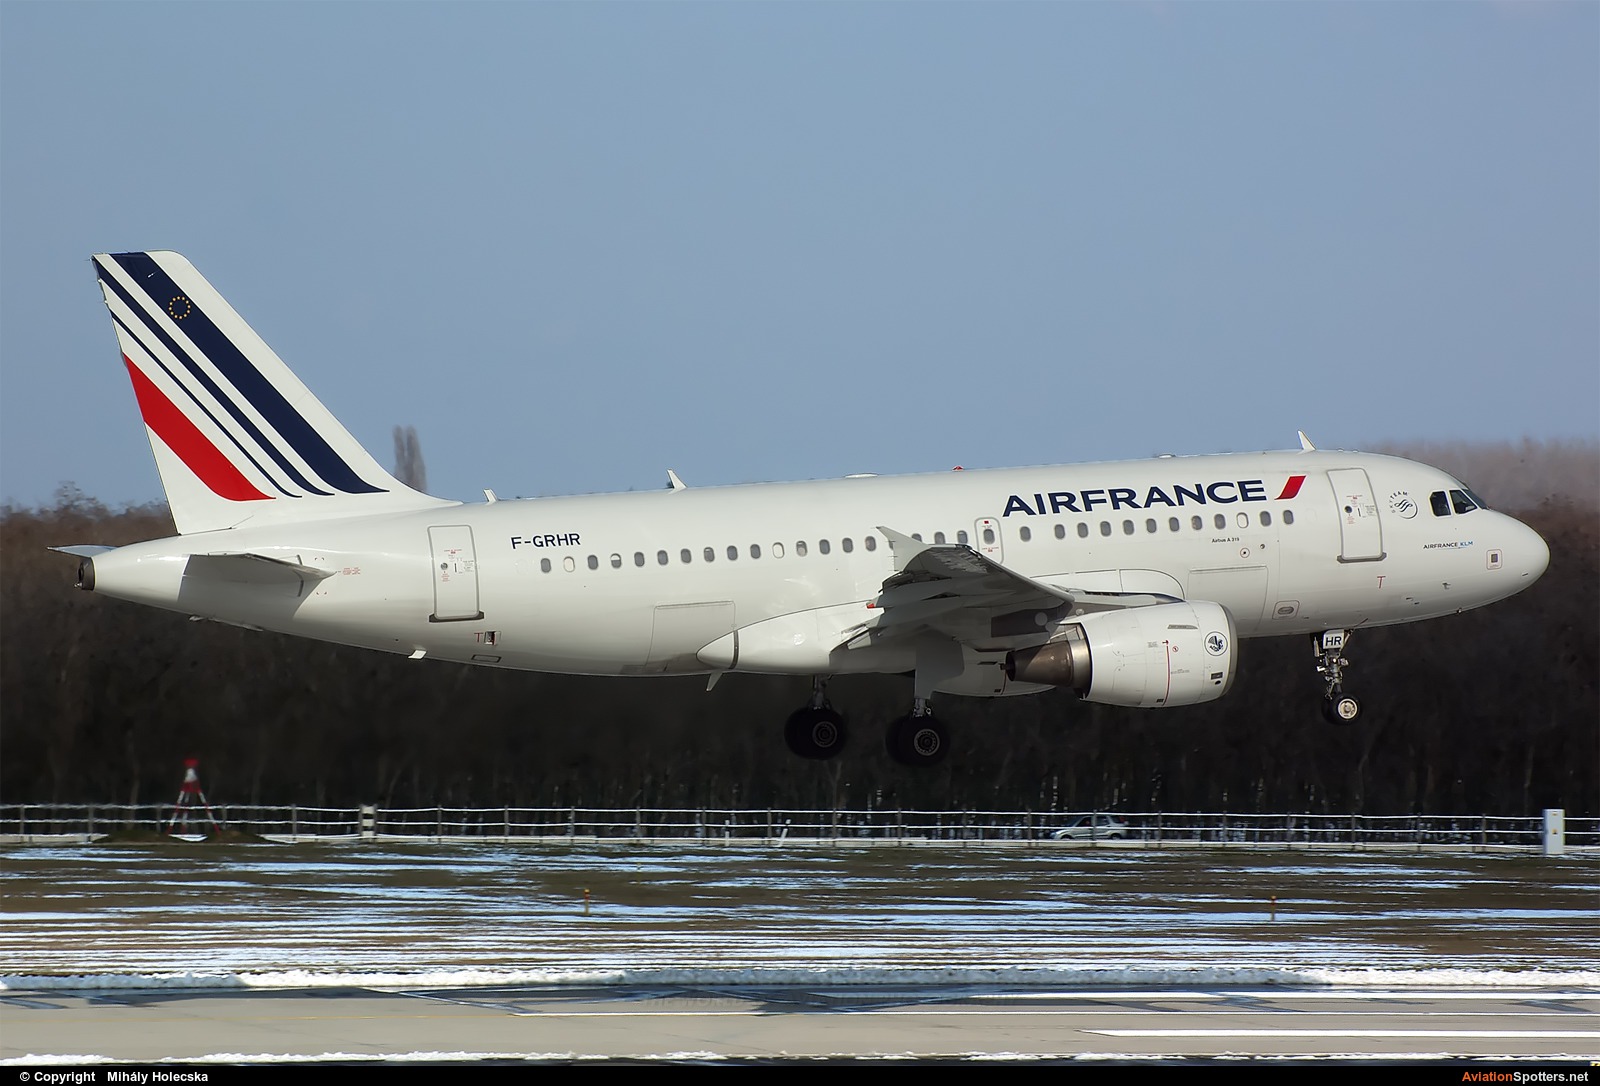 Air France  -  A319-111  (F-GRHR) By Mihály Holecska (Misixx)